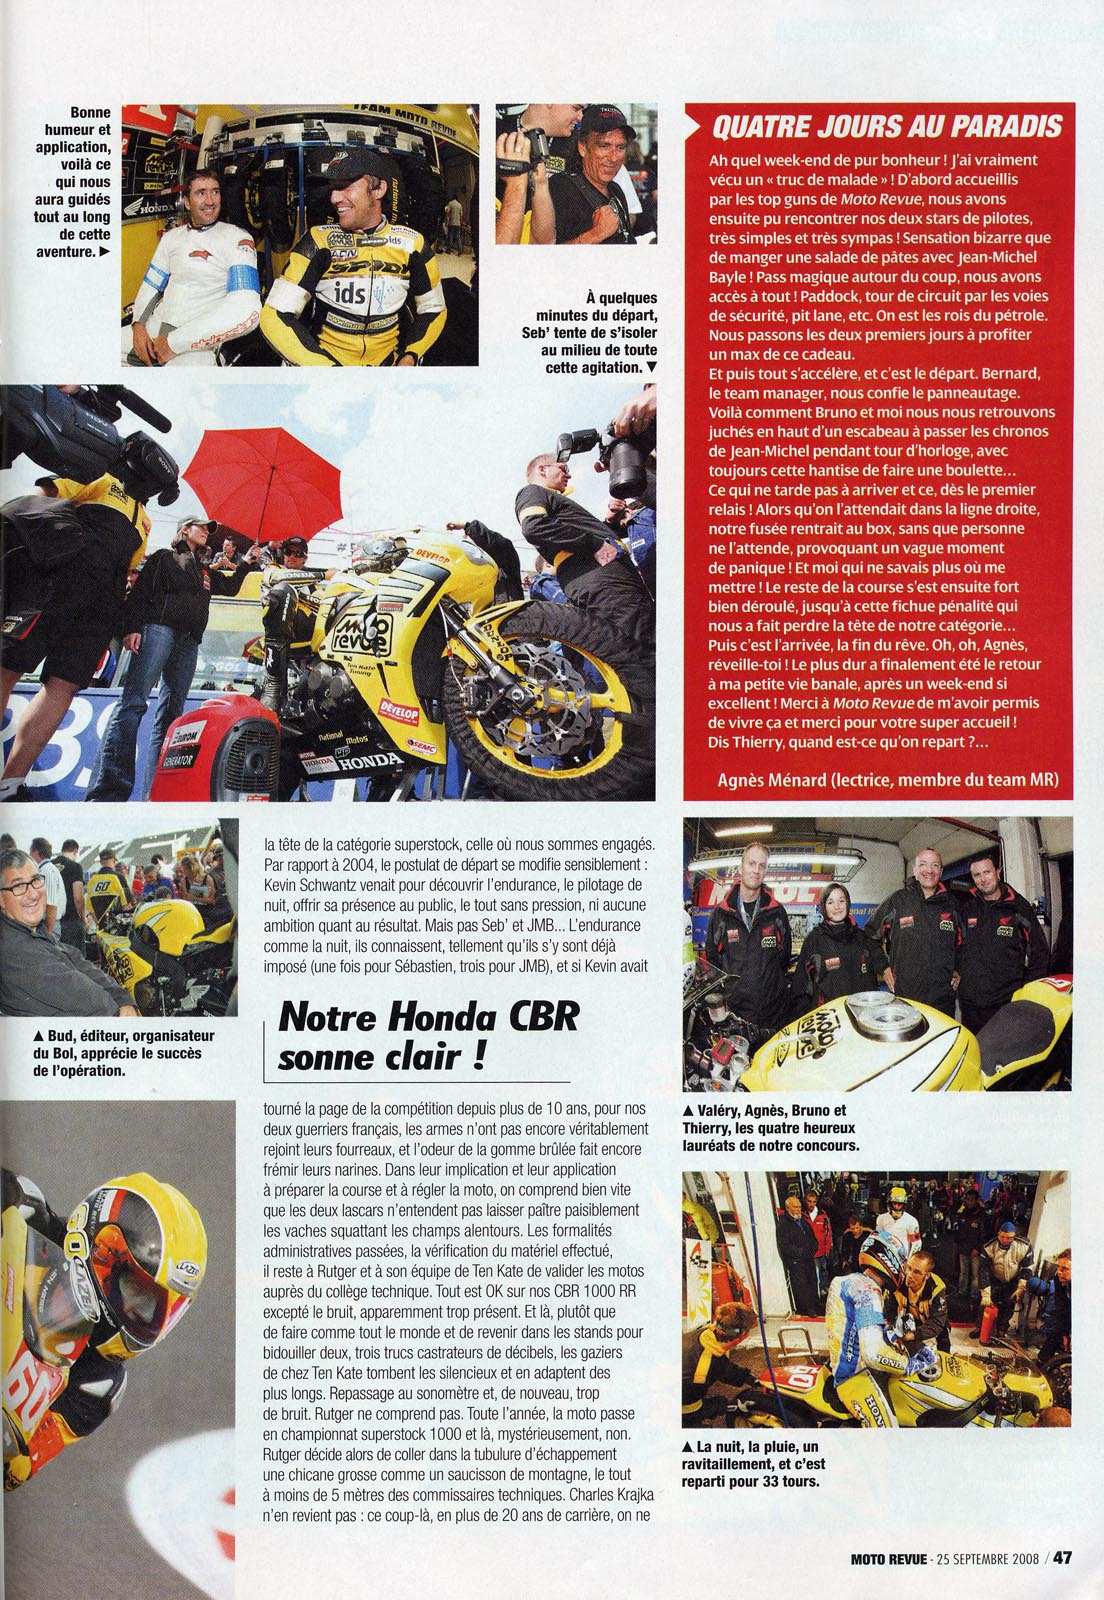 La page 47 du Moto Revue 3825 où on trouve un excellent papier de Thierry Traccan sur cette épreuve du Bol d'Or 2008